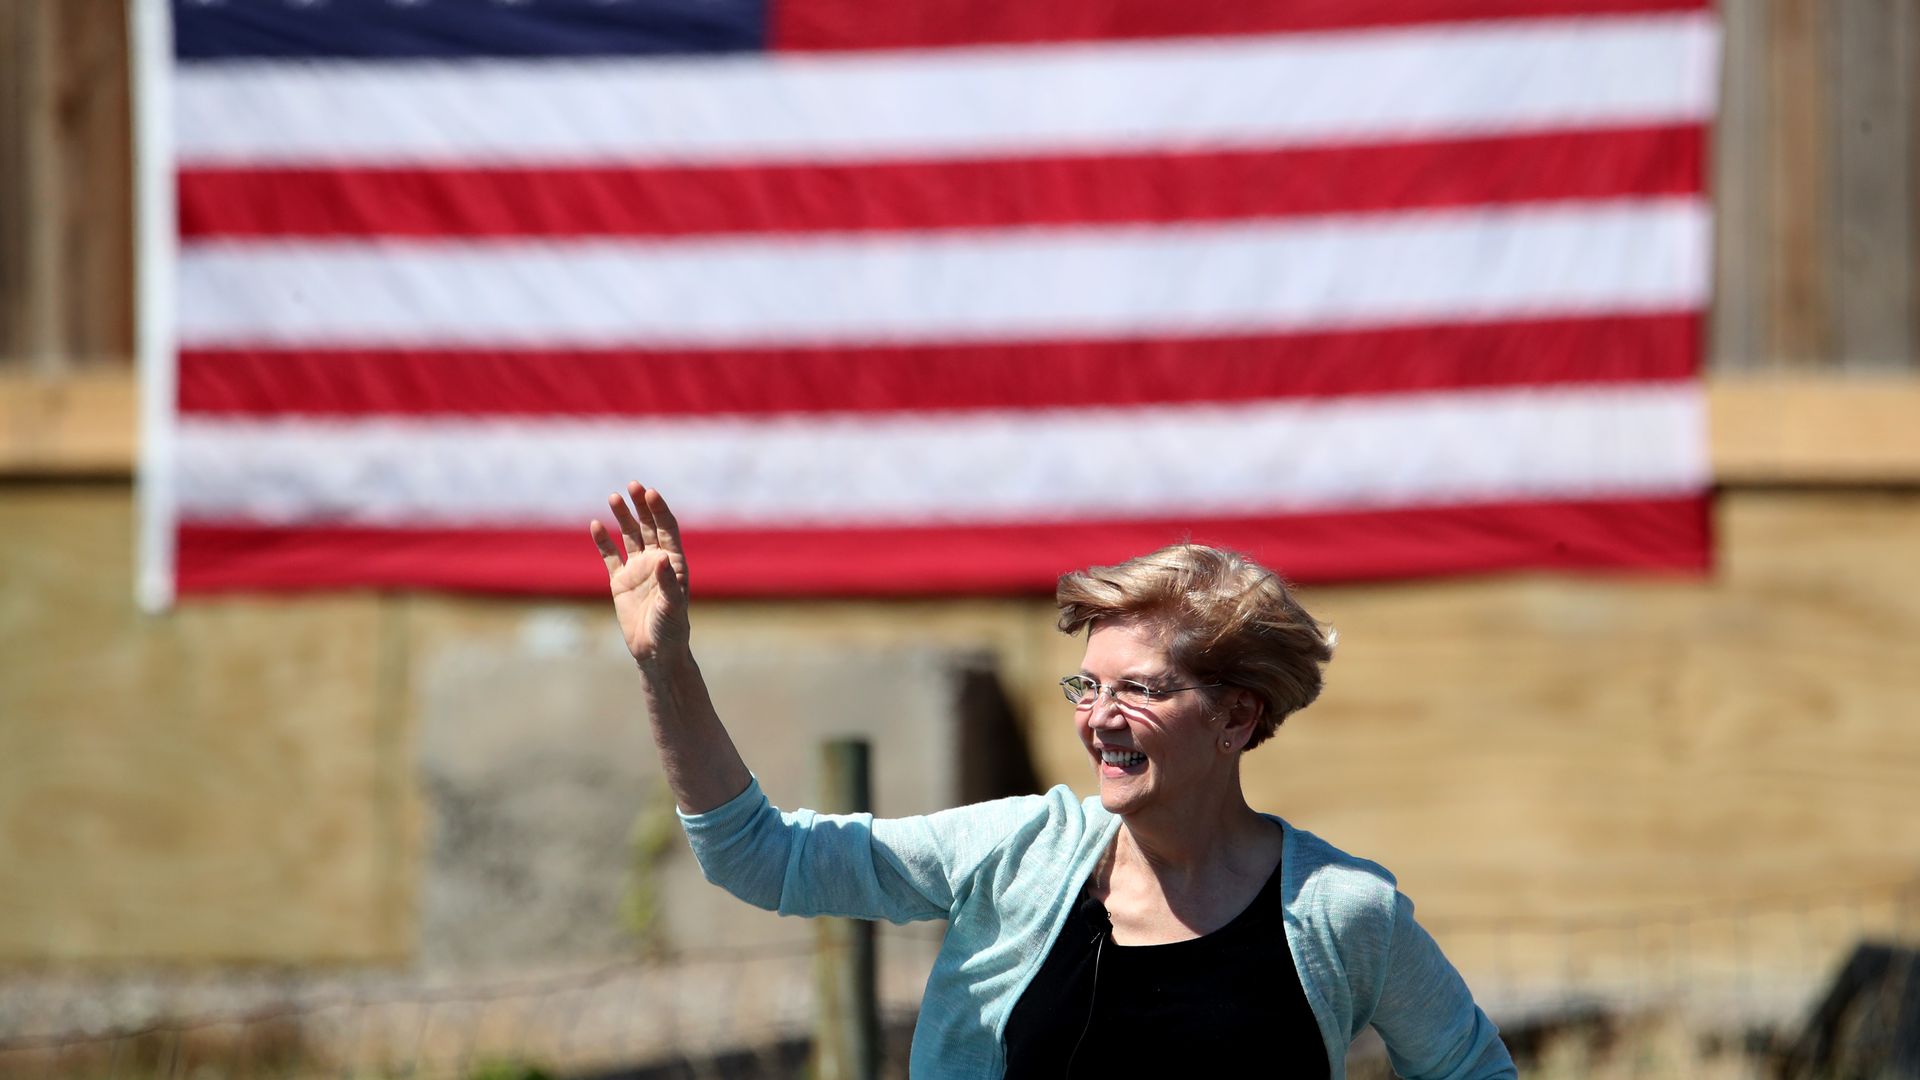 Elizabeth Warren waves in front of an American flag.